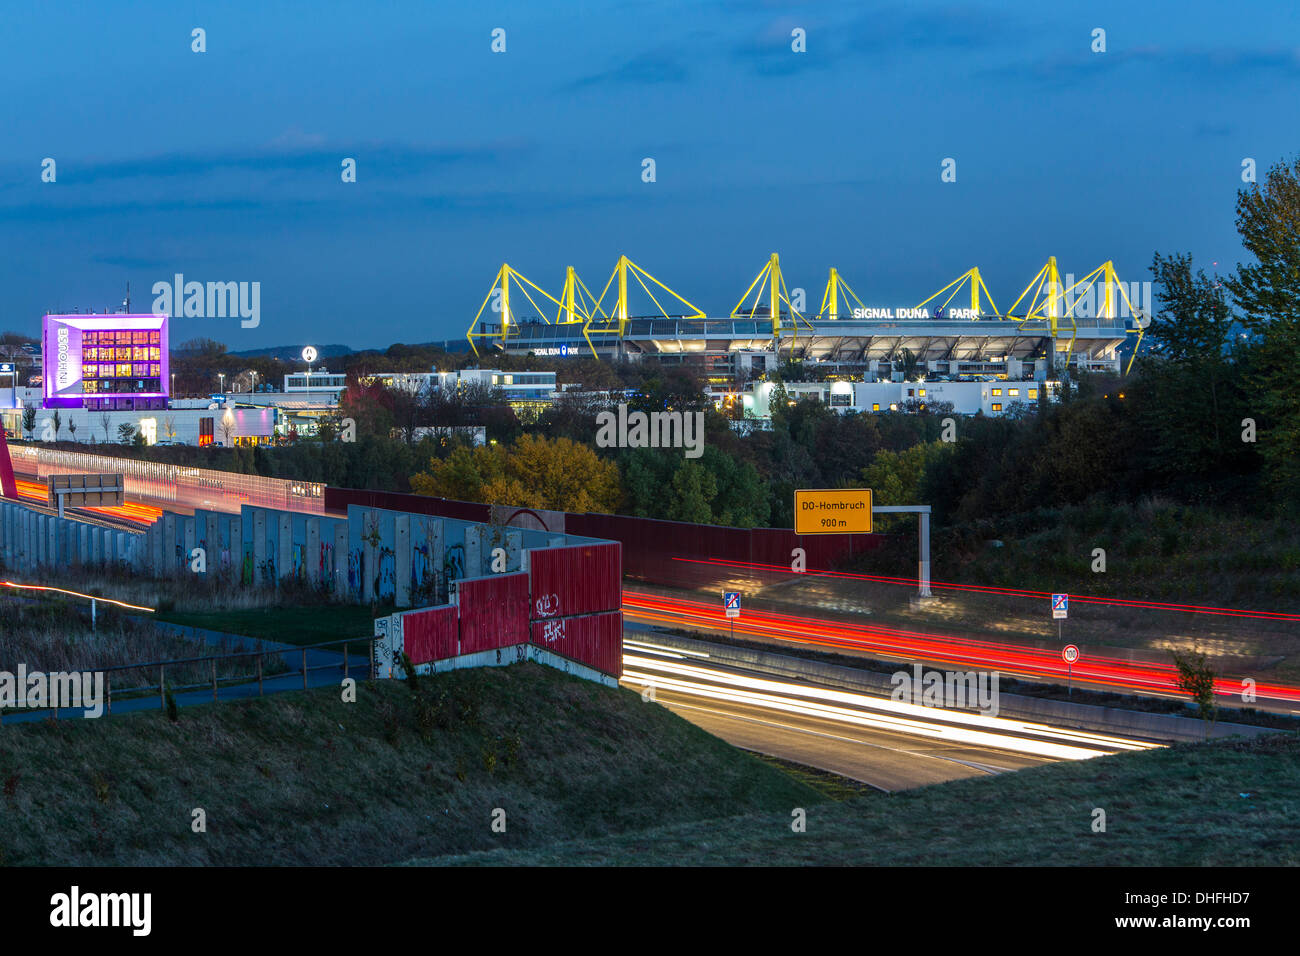 Die Skyline der Stadt Dortmund, Deutschland. Autobahn, Autobahn A40, Fußball-Stadion von Borussia Dortmund, BVB, Bundesliga. Stockfoto